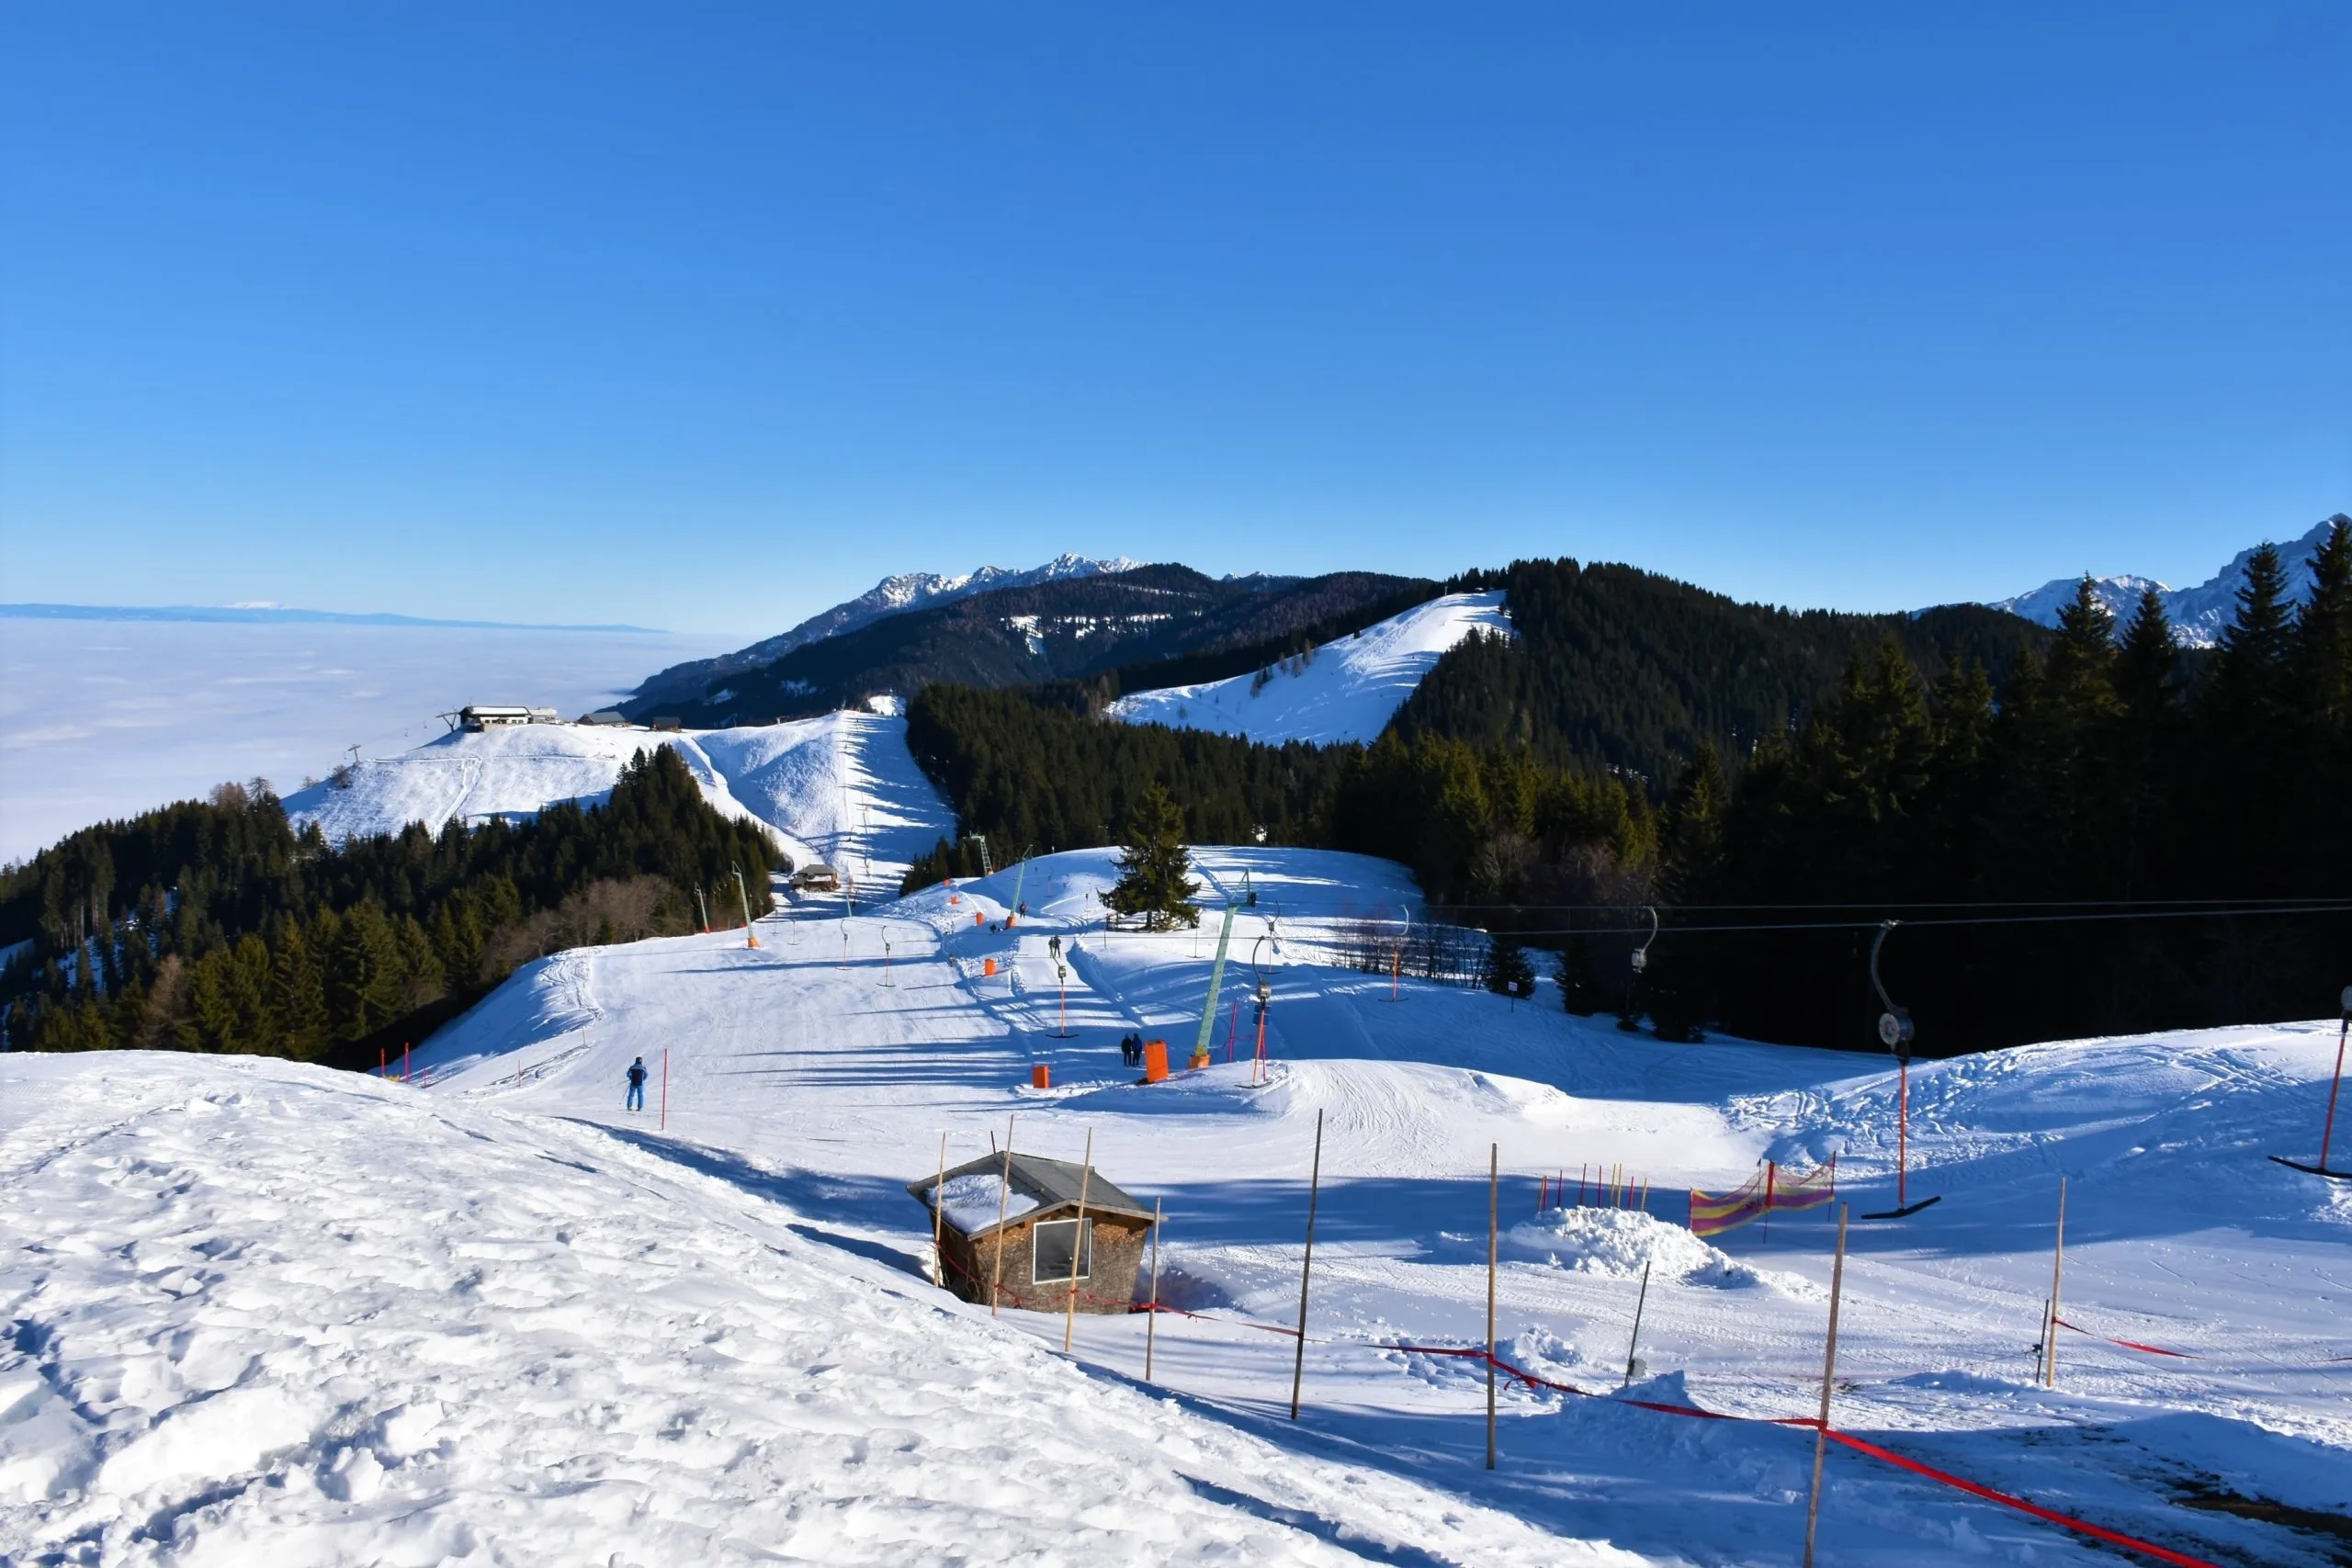 Arnoldstein ski resort